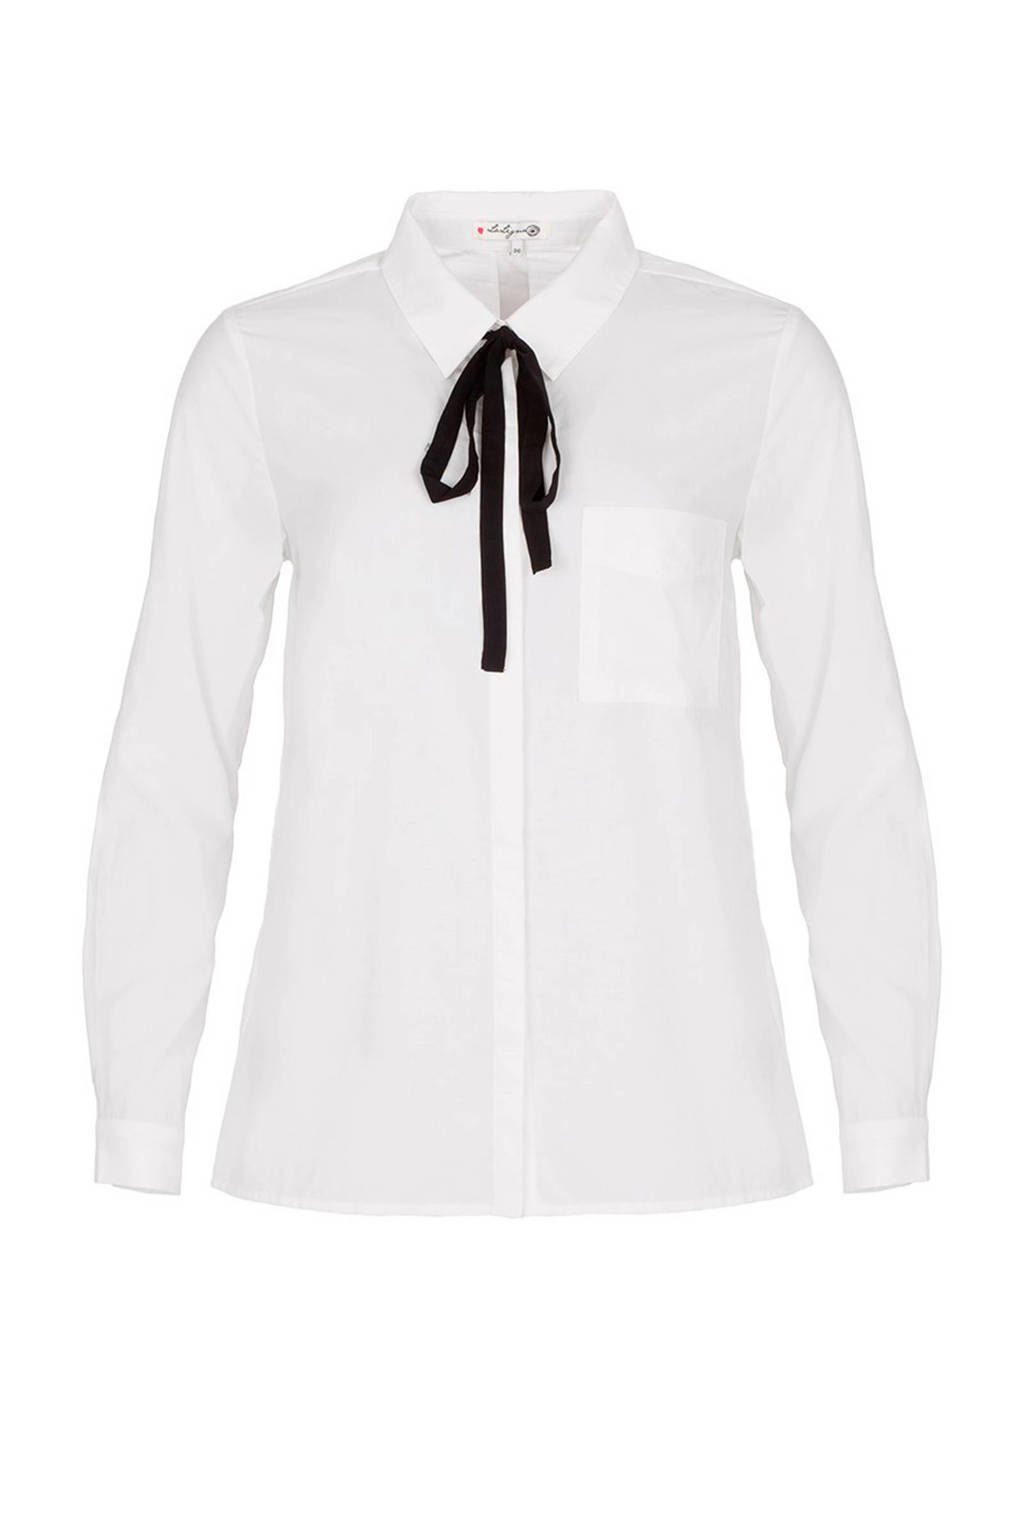 Gelach kern Integreren La Ligna blouse met strik wit | wehkamp